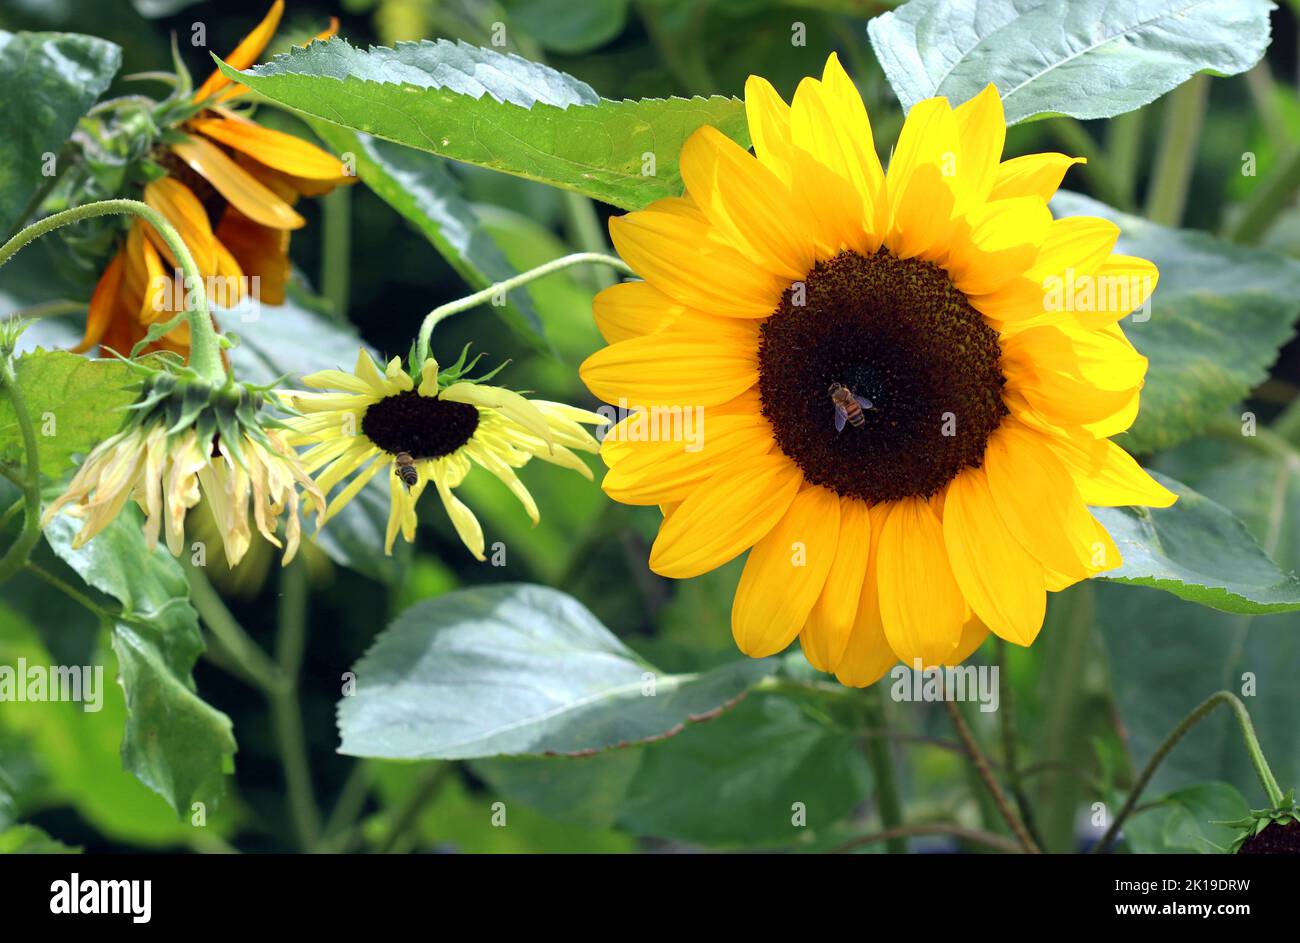 Eine gewöhnliche Sonnenblume (Helianthus annuus) leuchtet noch, während andere Sorten um sie herum welkt haben. The Kitchen Garden, Kew Gardens, Ende September Stockfoto